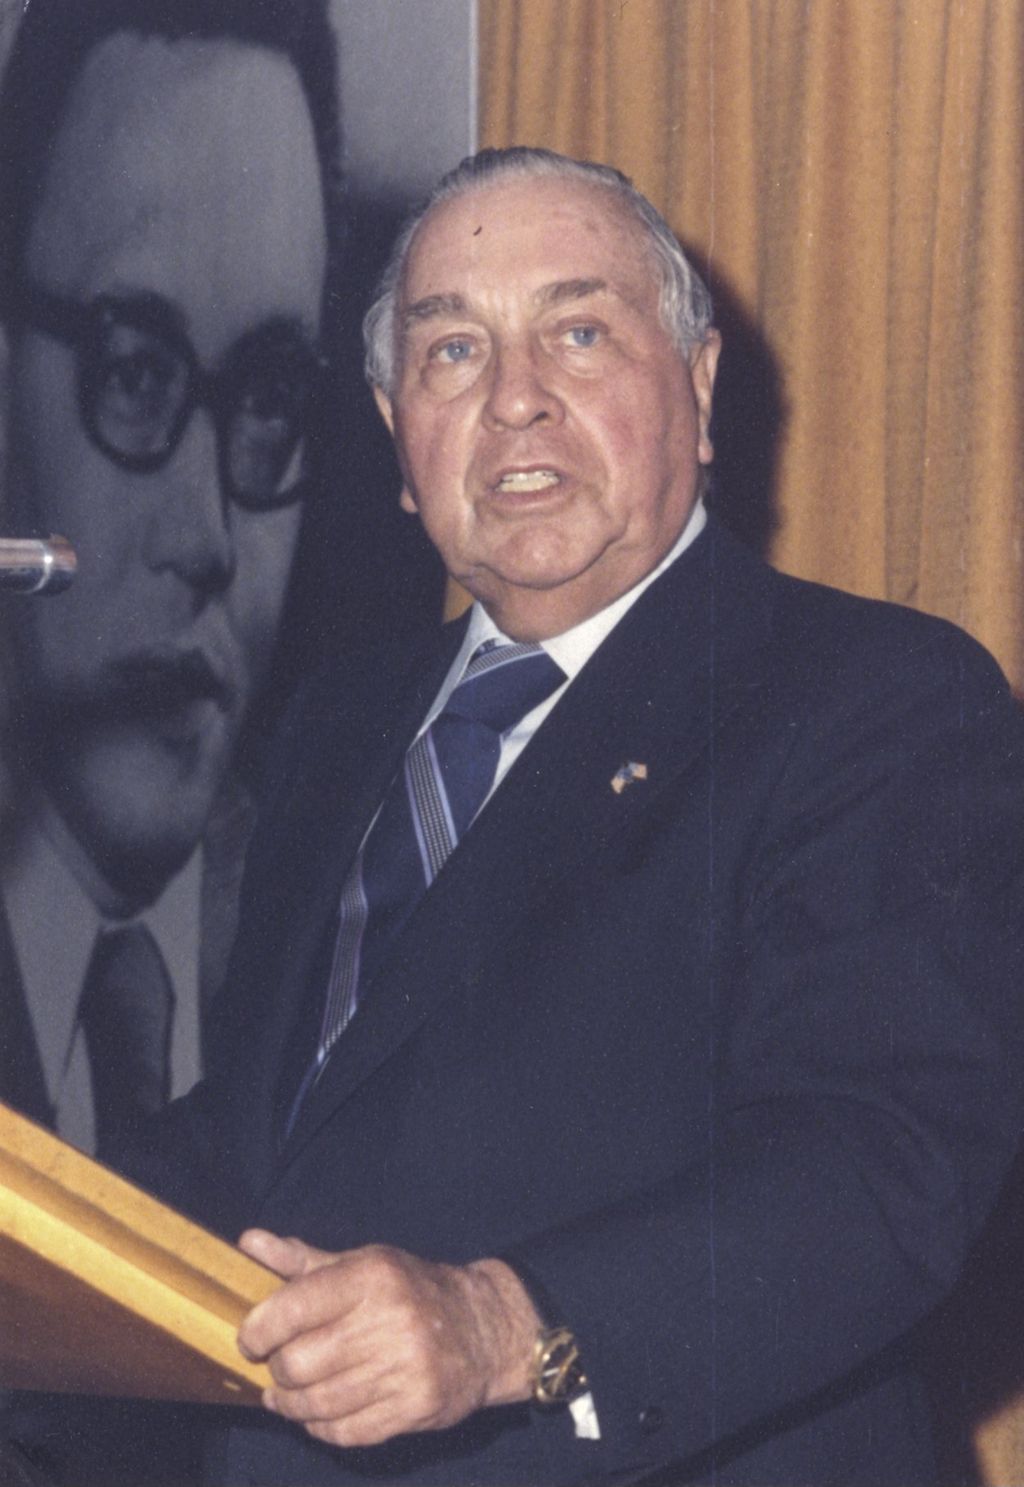 Miniature of Richard J. Daley giving a speech